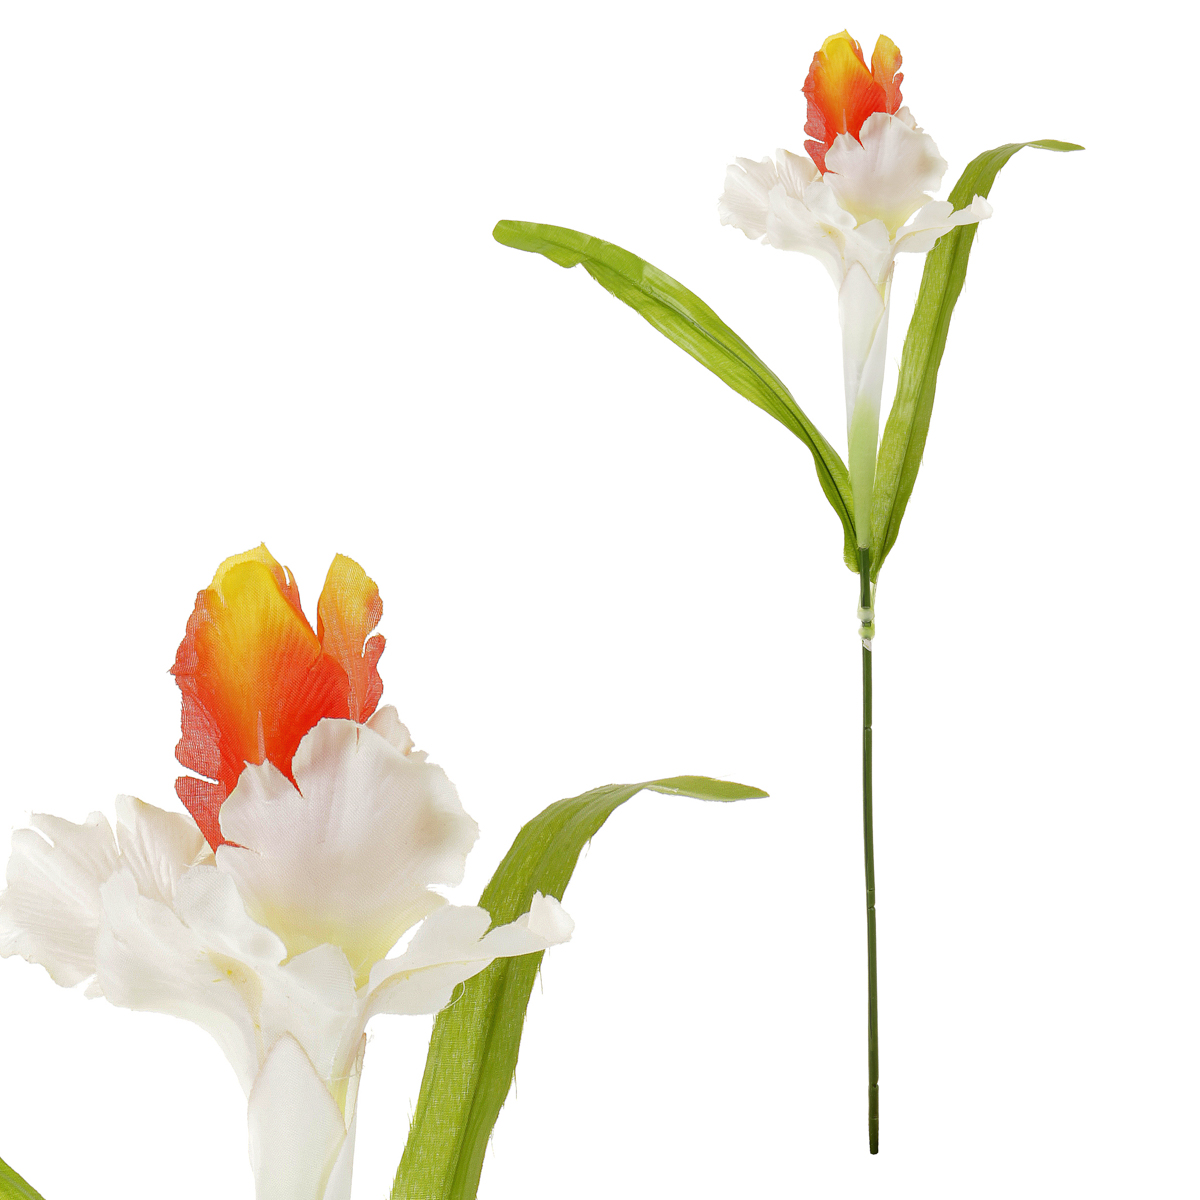 Iris, barva bílo-oranžová, umělá květina.